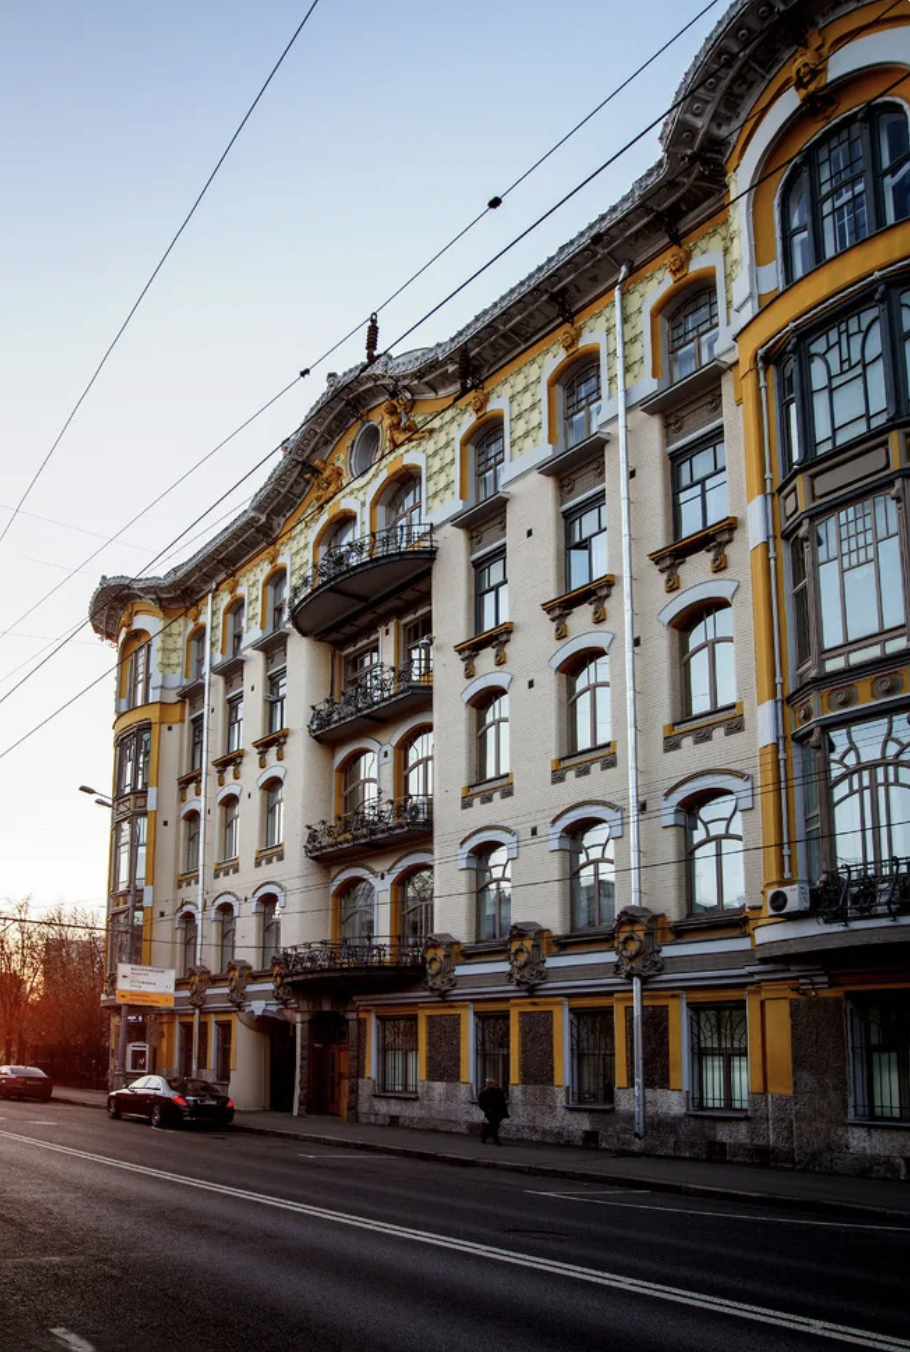 莫斯科住宅楼图片